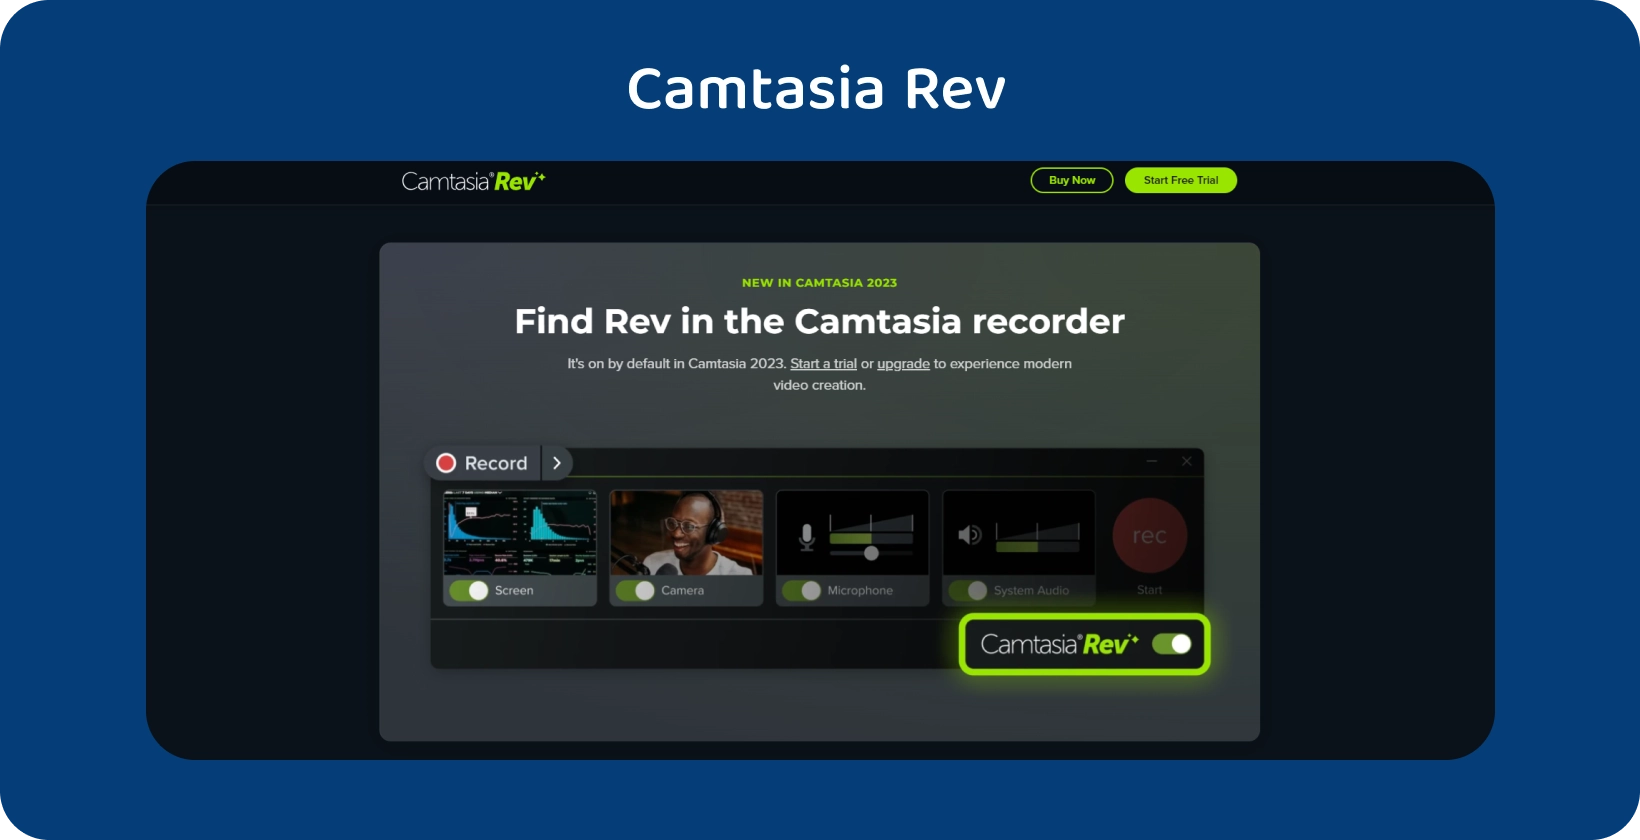 La bannière de la page d’accueil de Camtasia Rev, présentant des outils de création vidéo assistés par AI pour une production vidéo améliorée.